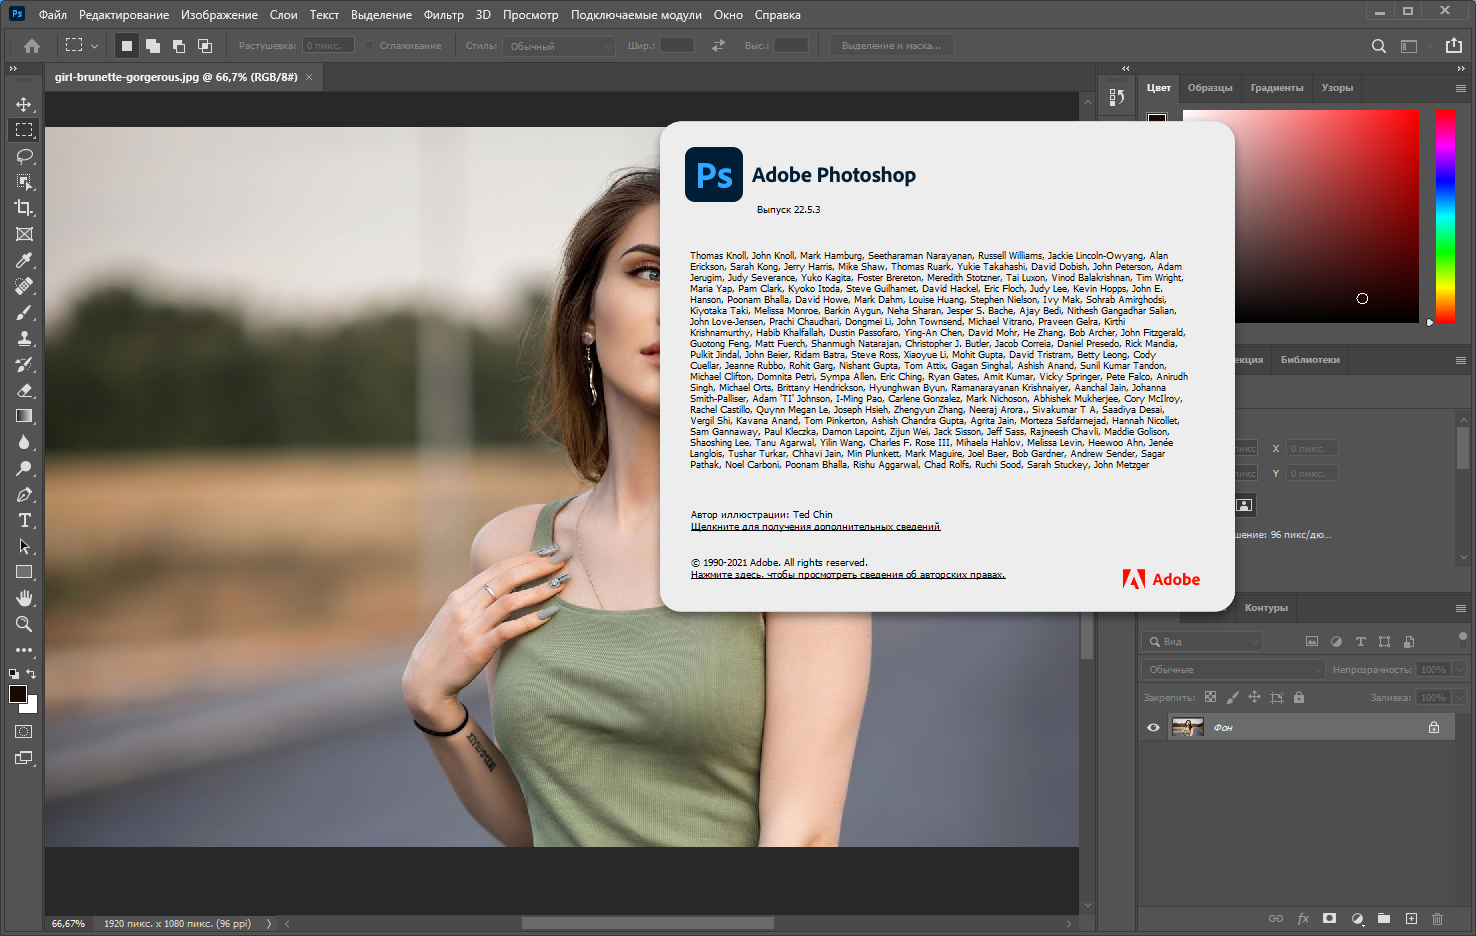 Adobe Photoshop 2021 22.5.3.561 RePack by KpoJIuK [Multi/Ru]